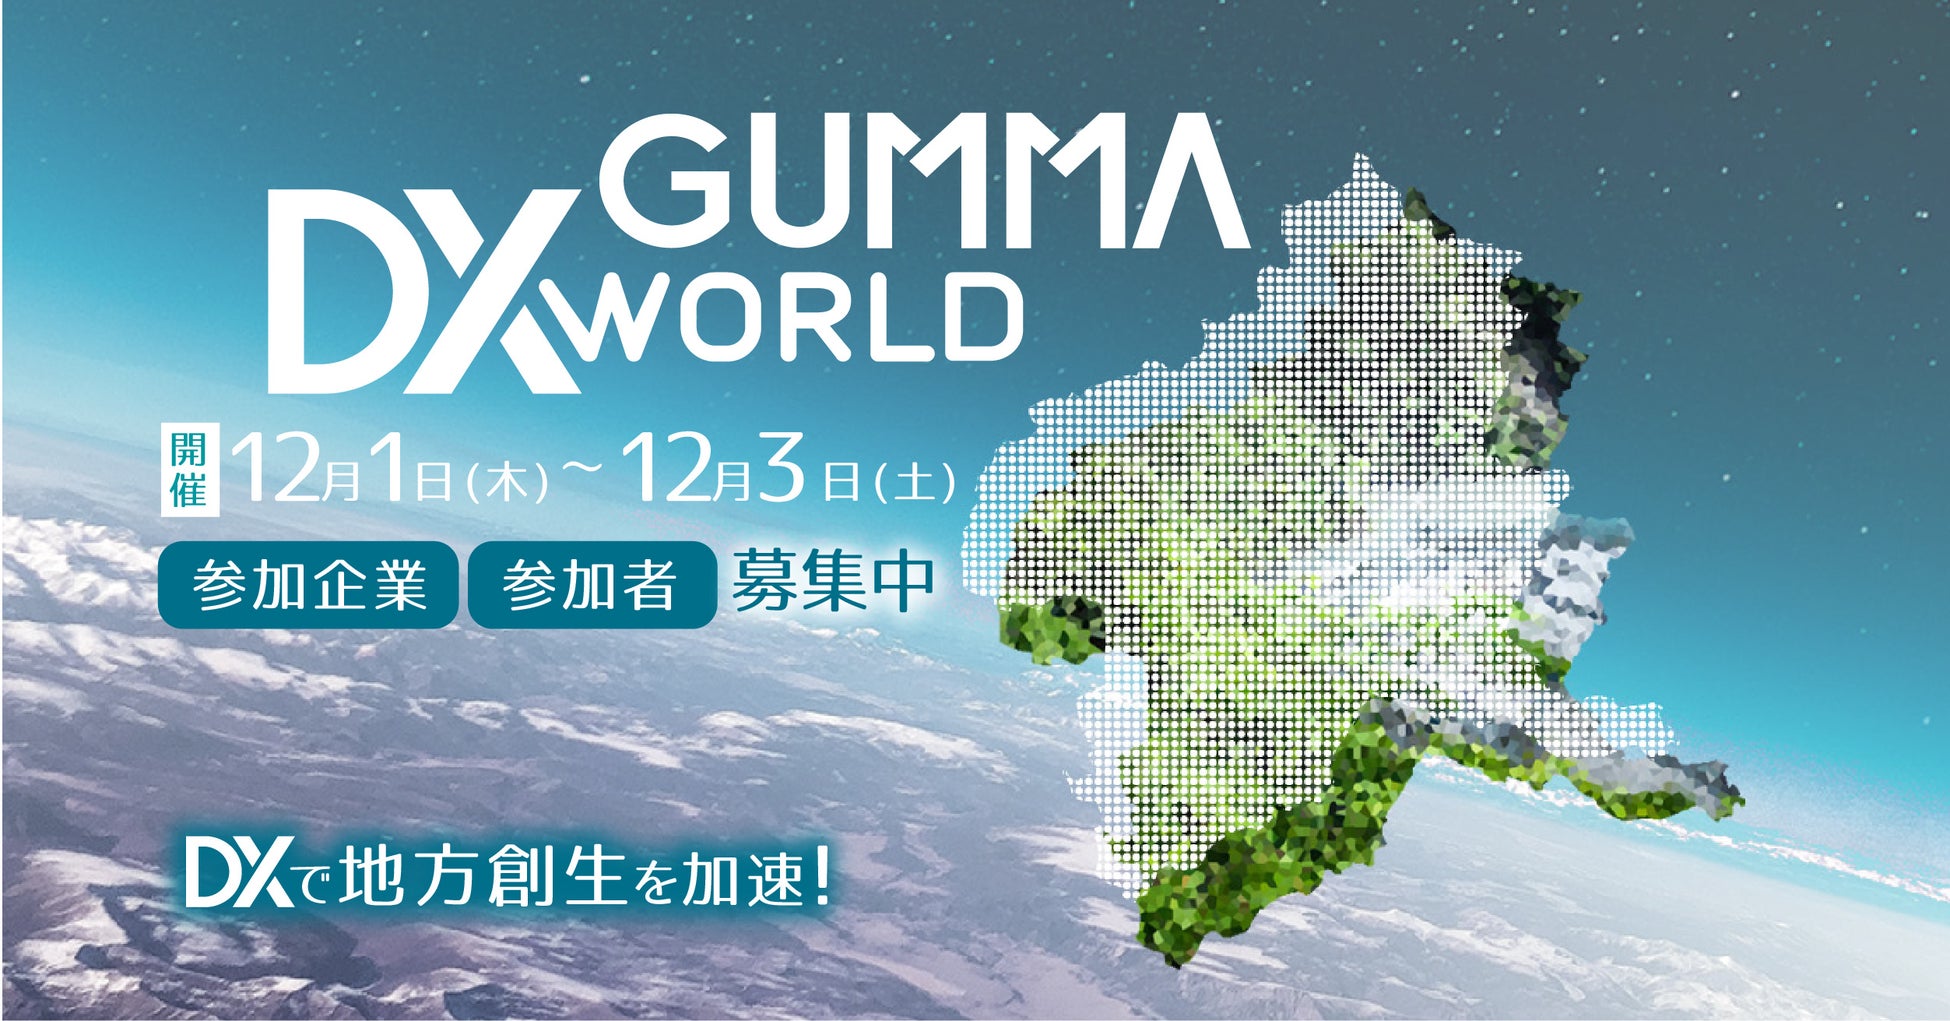 デジタルトランスフォーメーション（DX）で地方創生を加速「GUMMA DX WORLD 2022」、12月1日より群馬県庁やメタバース上などでハイブリッド開催のサブ画像1